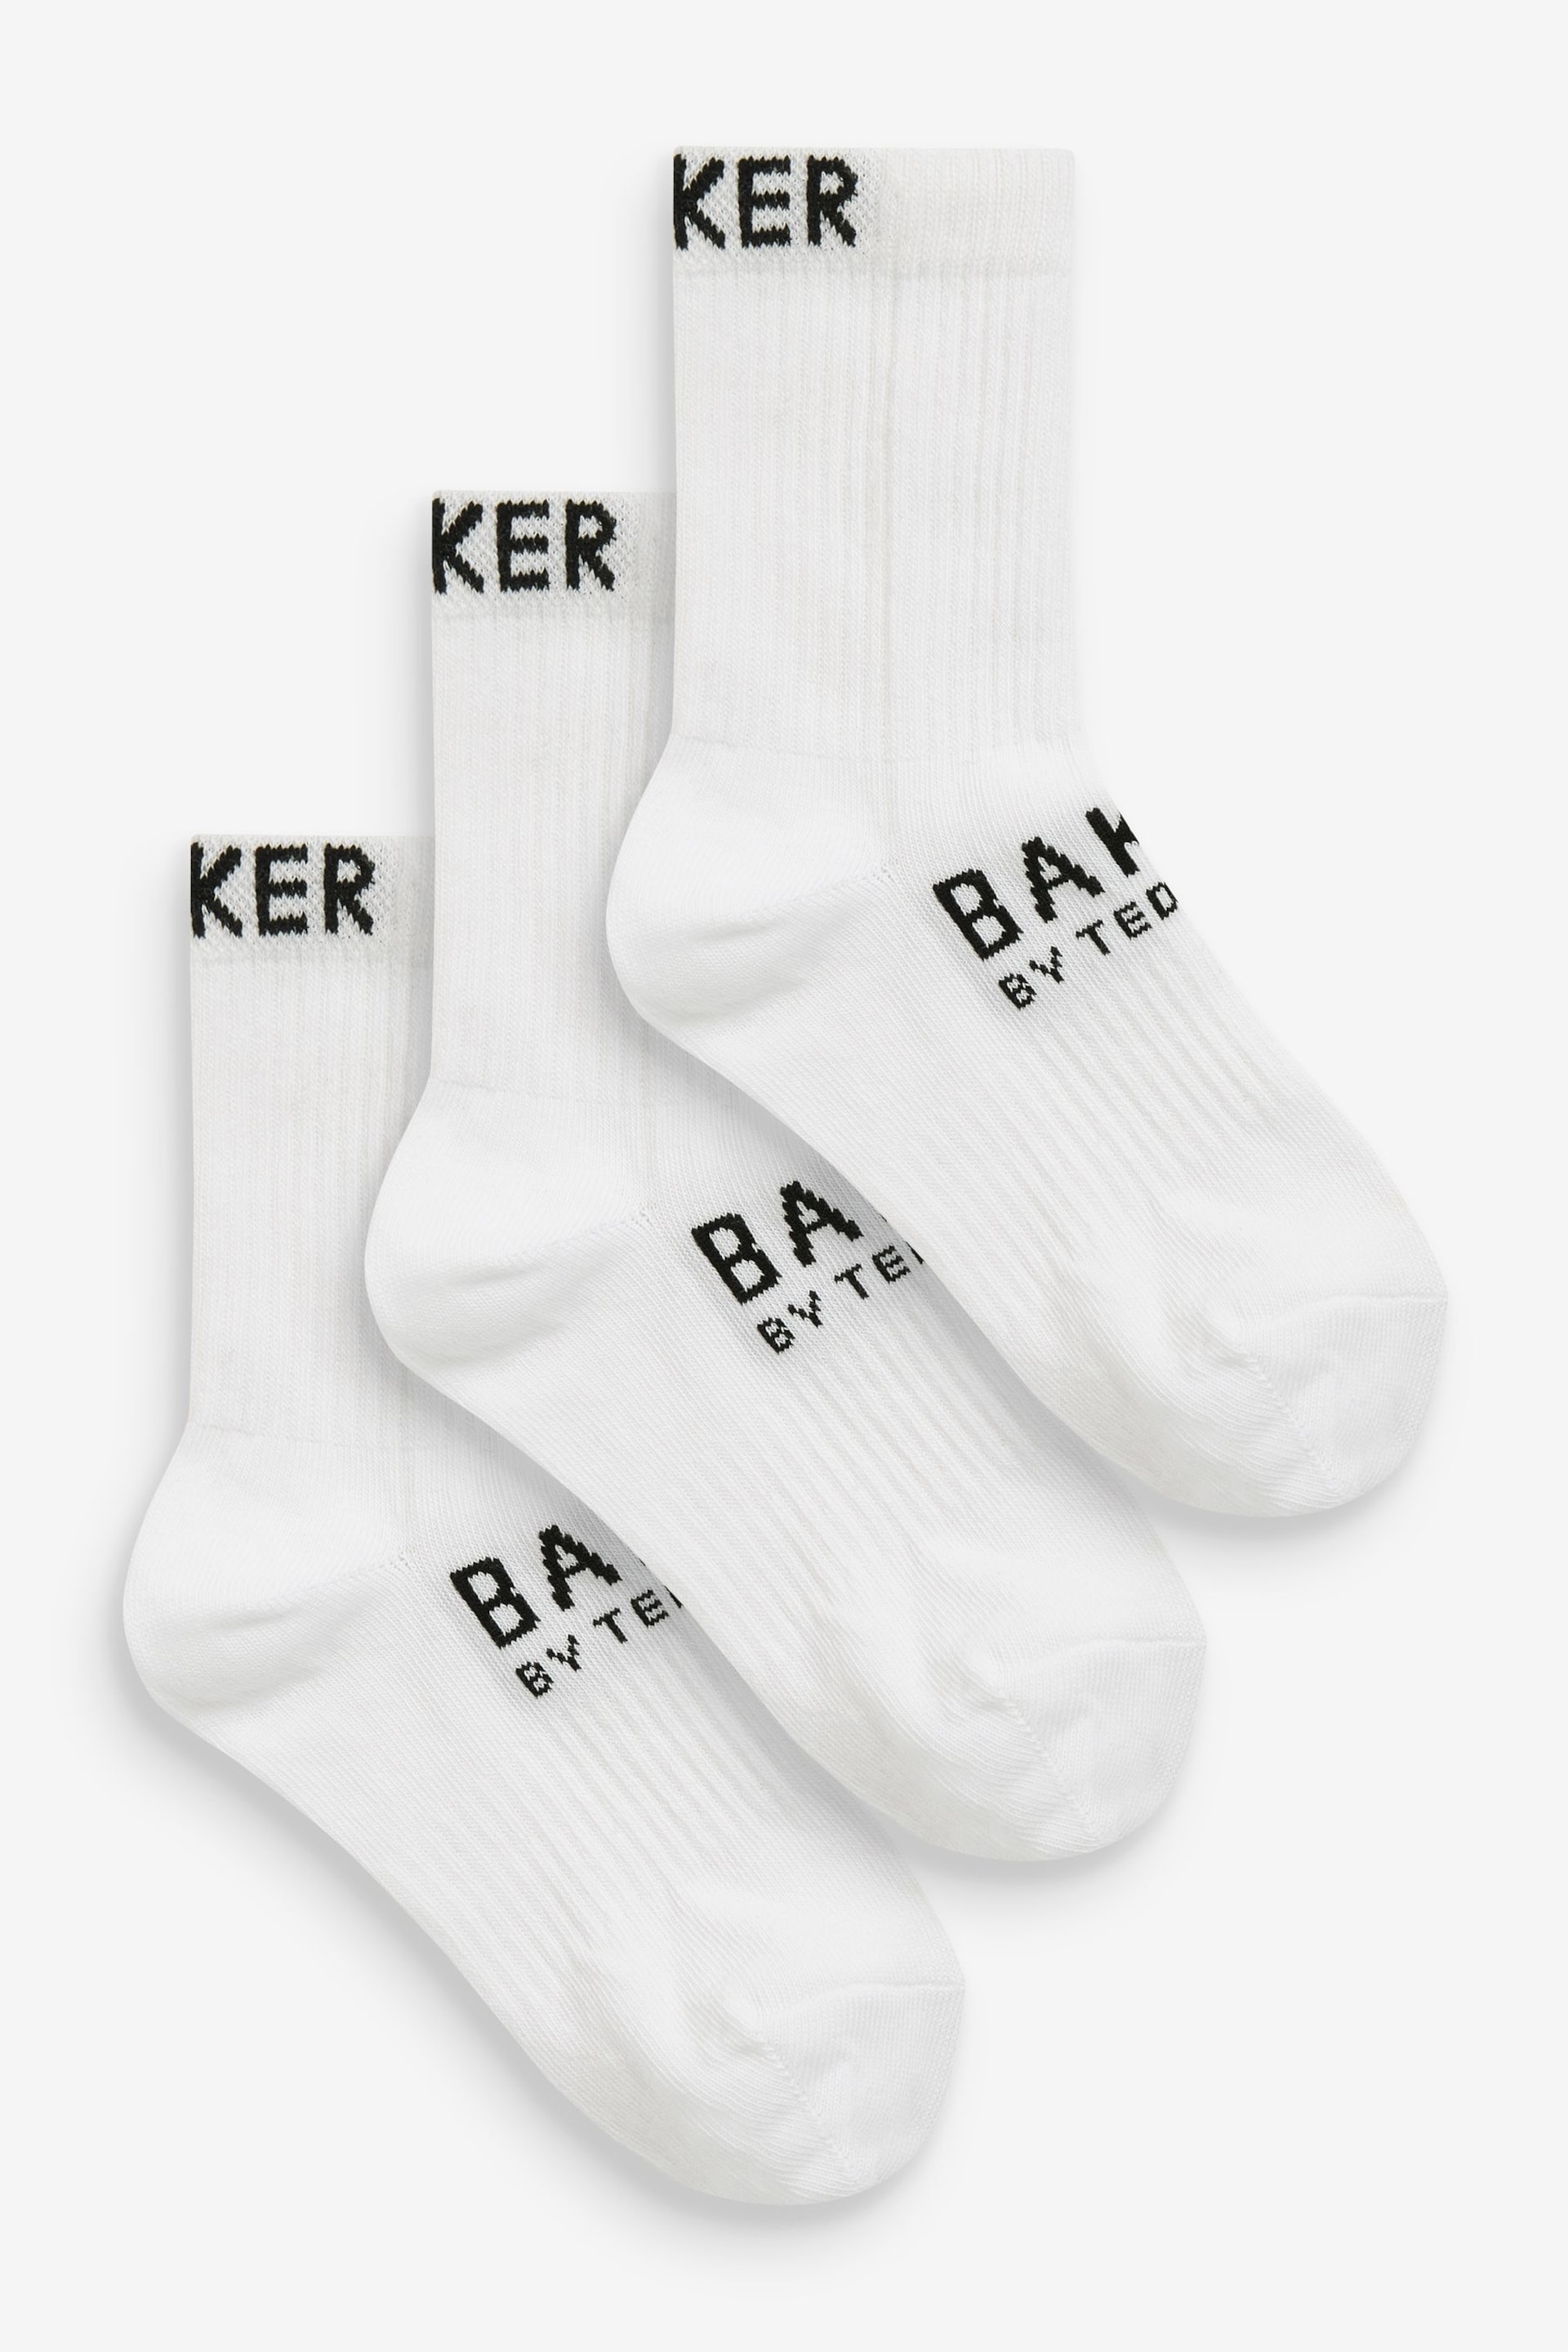 Baker by Ted Baker Socks 3 Pack - Image 1 of 6